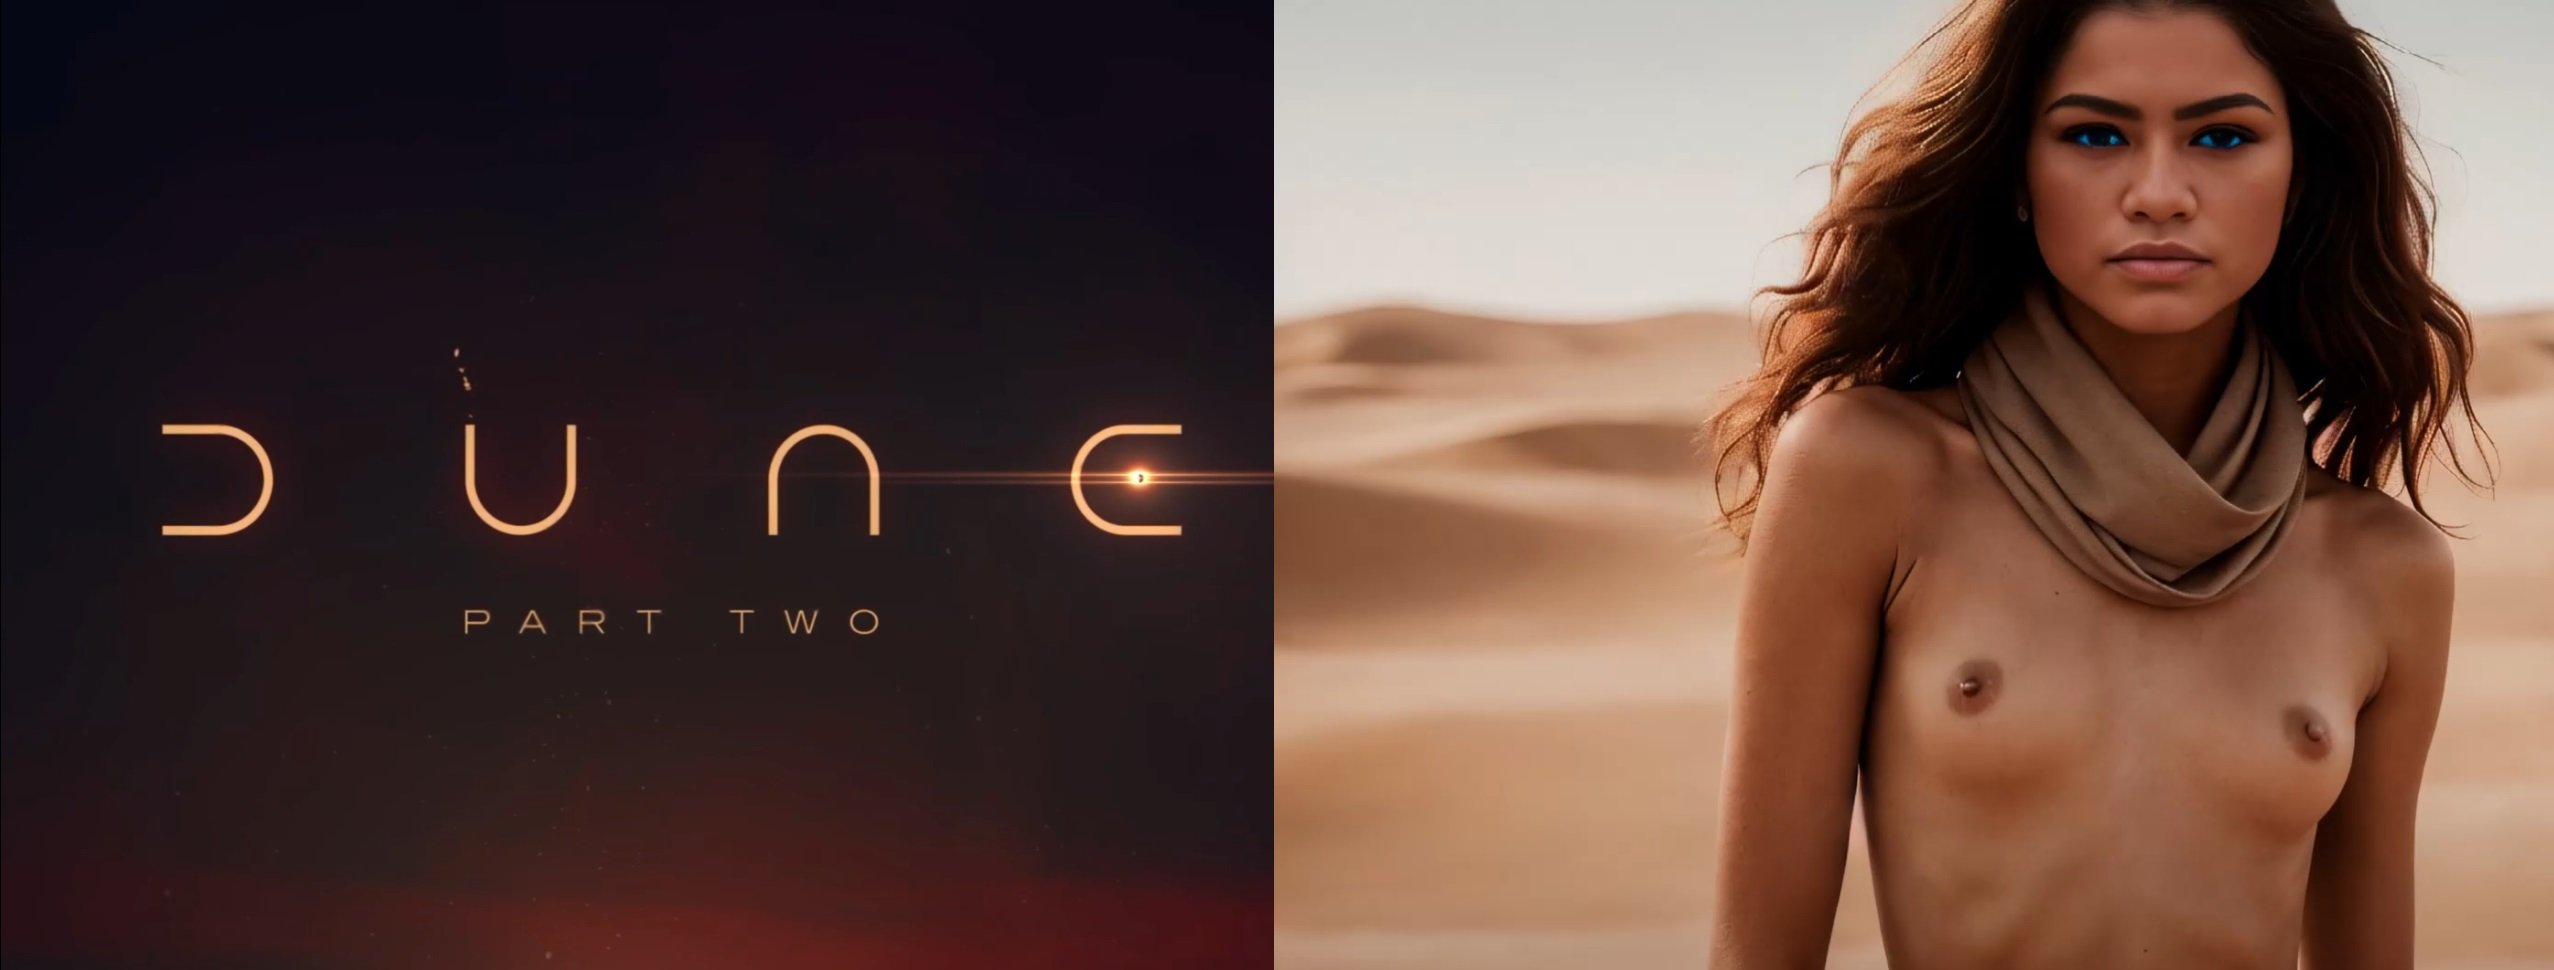 Zendaya Nude Photos And Videos Dune Actress Leaked 